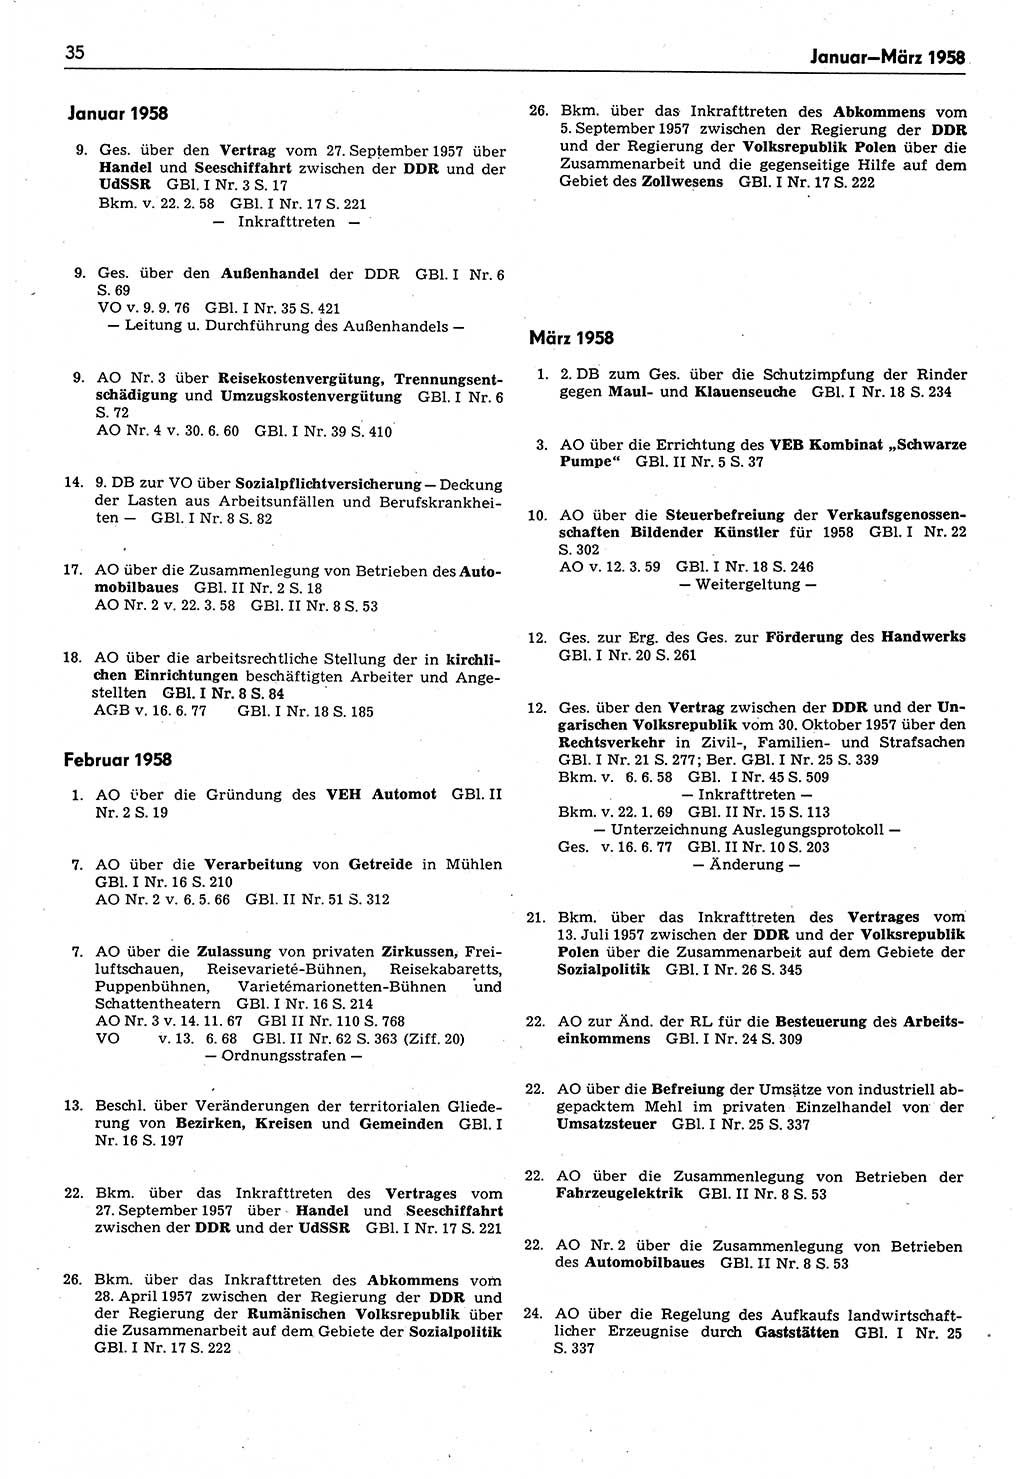 Das geltende Recht der Deutschen Demokratischen Republik (DDR) 1949-1988, Seite 35 (Gelt. R. DDR 1949-1988, S. 35)